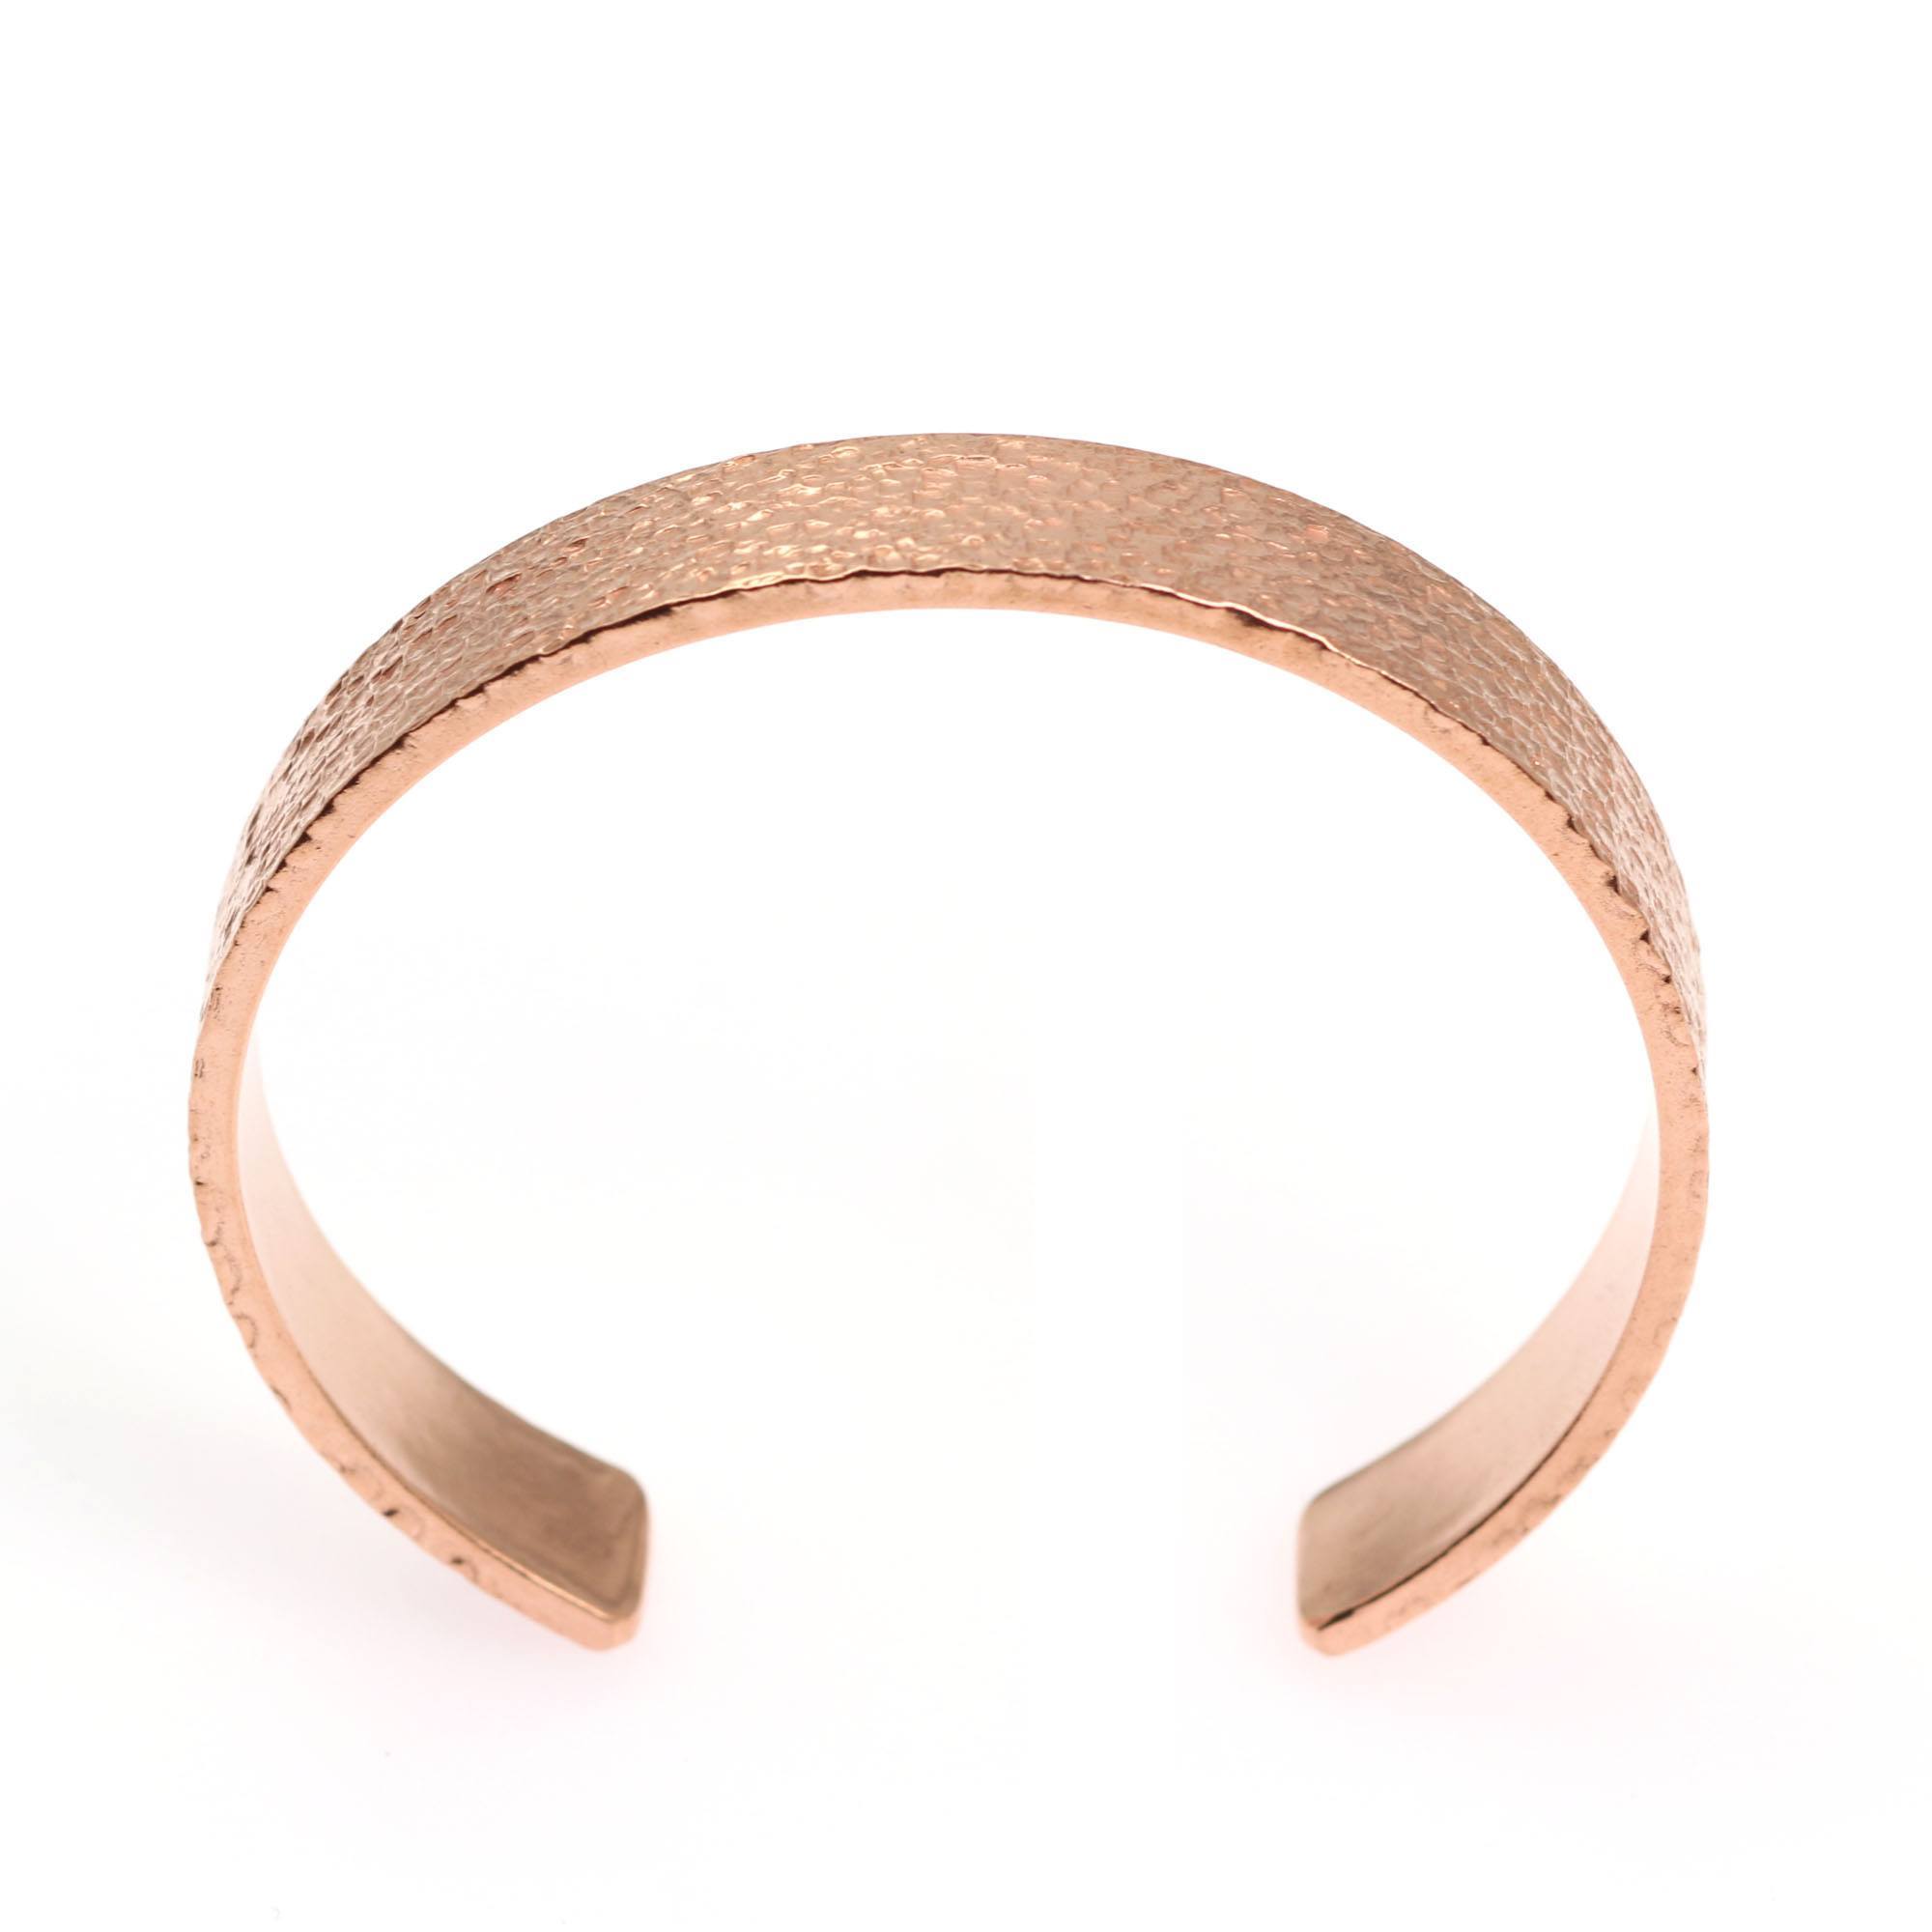 Shape of 10mm Wide Men's Texturized Copper Cuff Bracelet